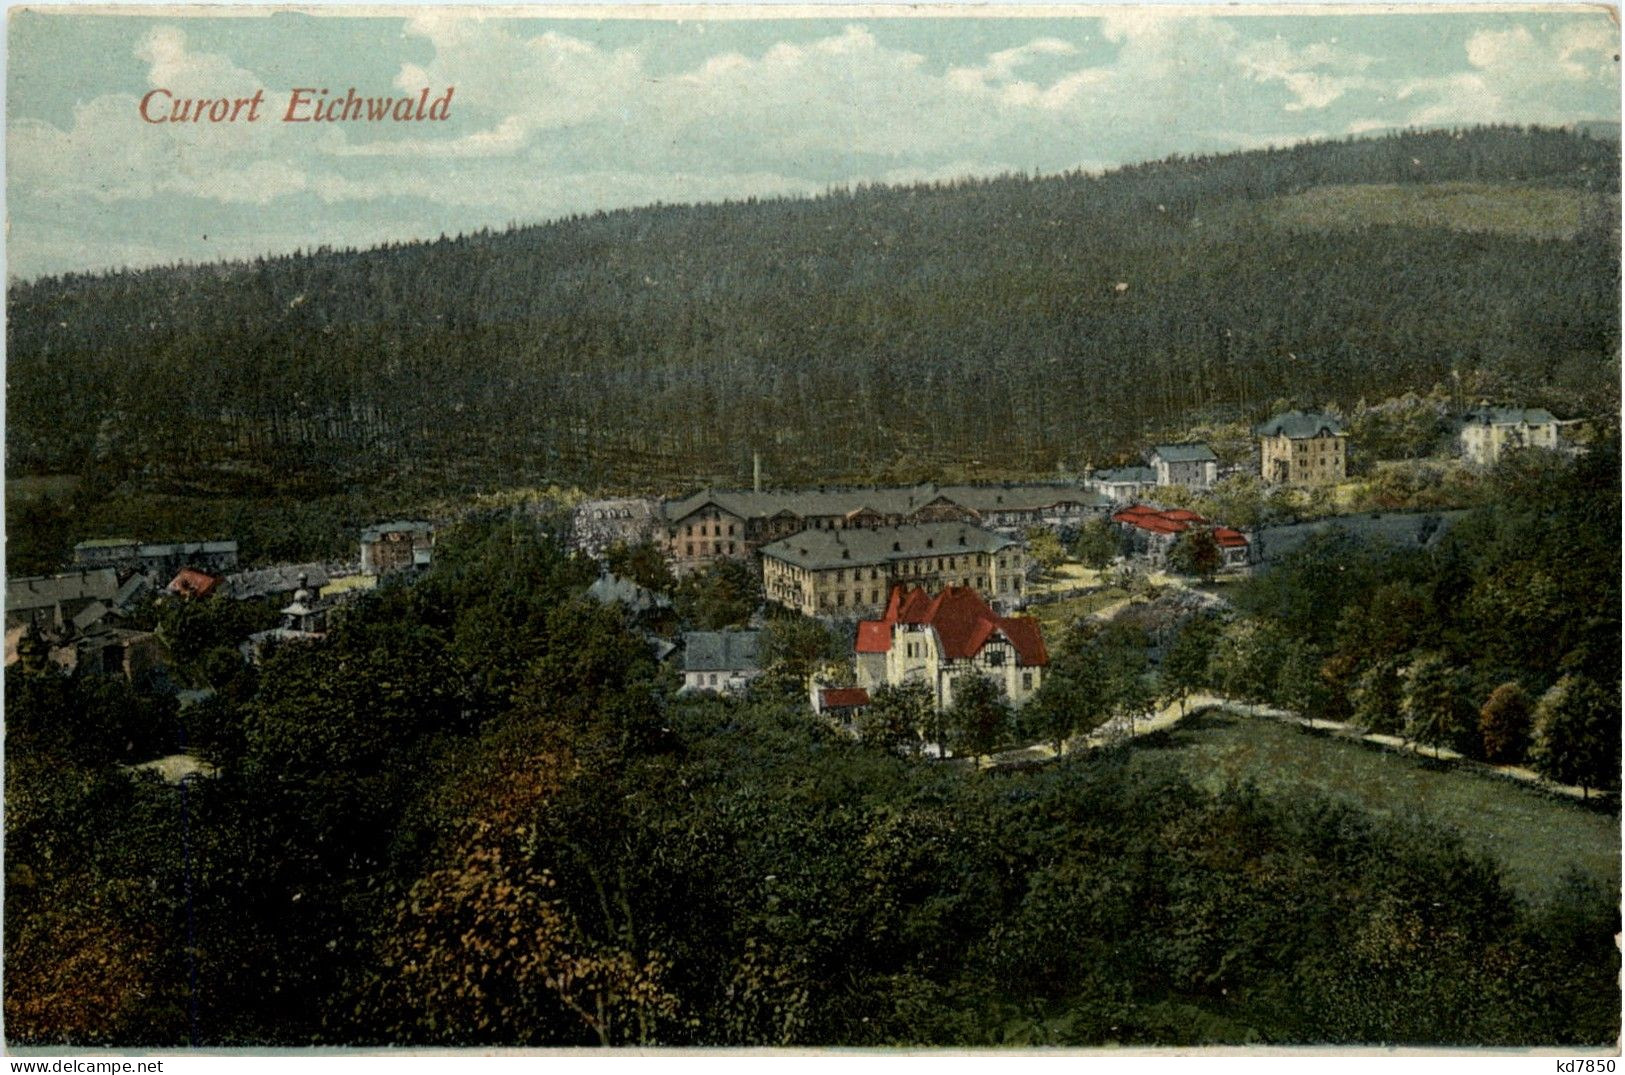 Curort Eichwald - Tschechische Republik